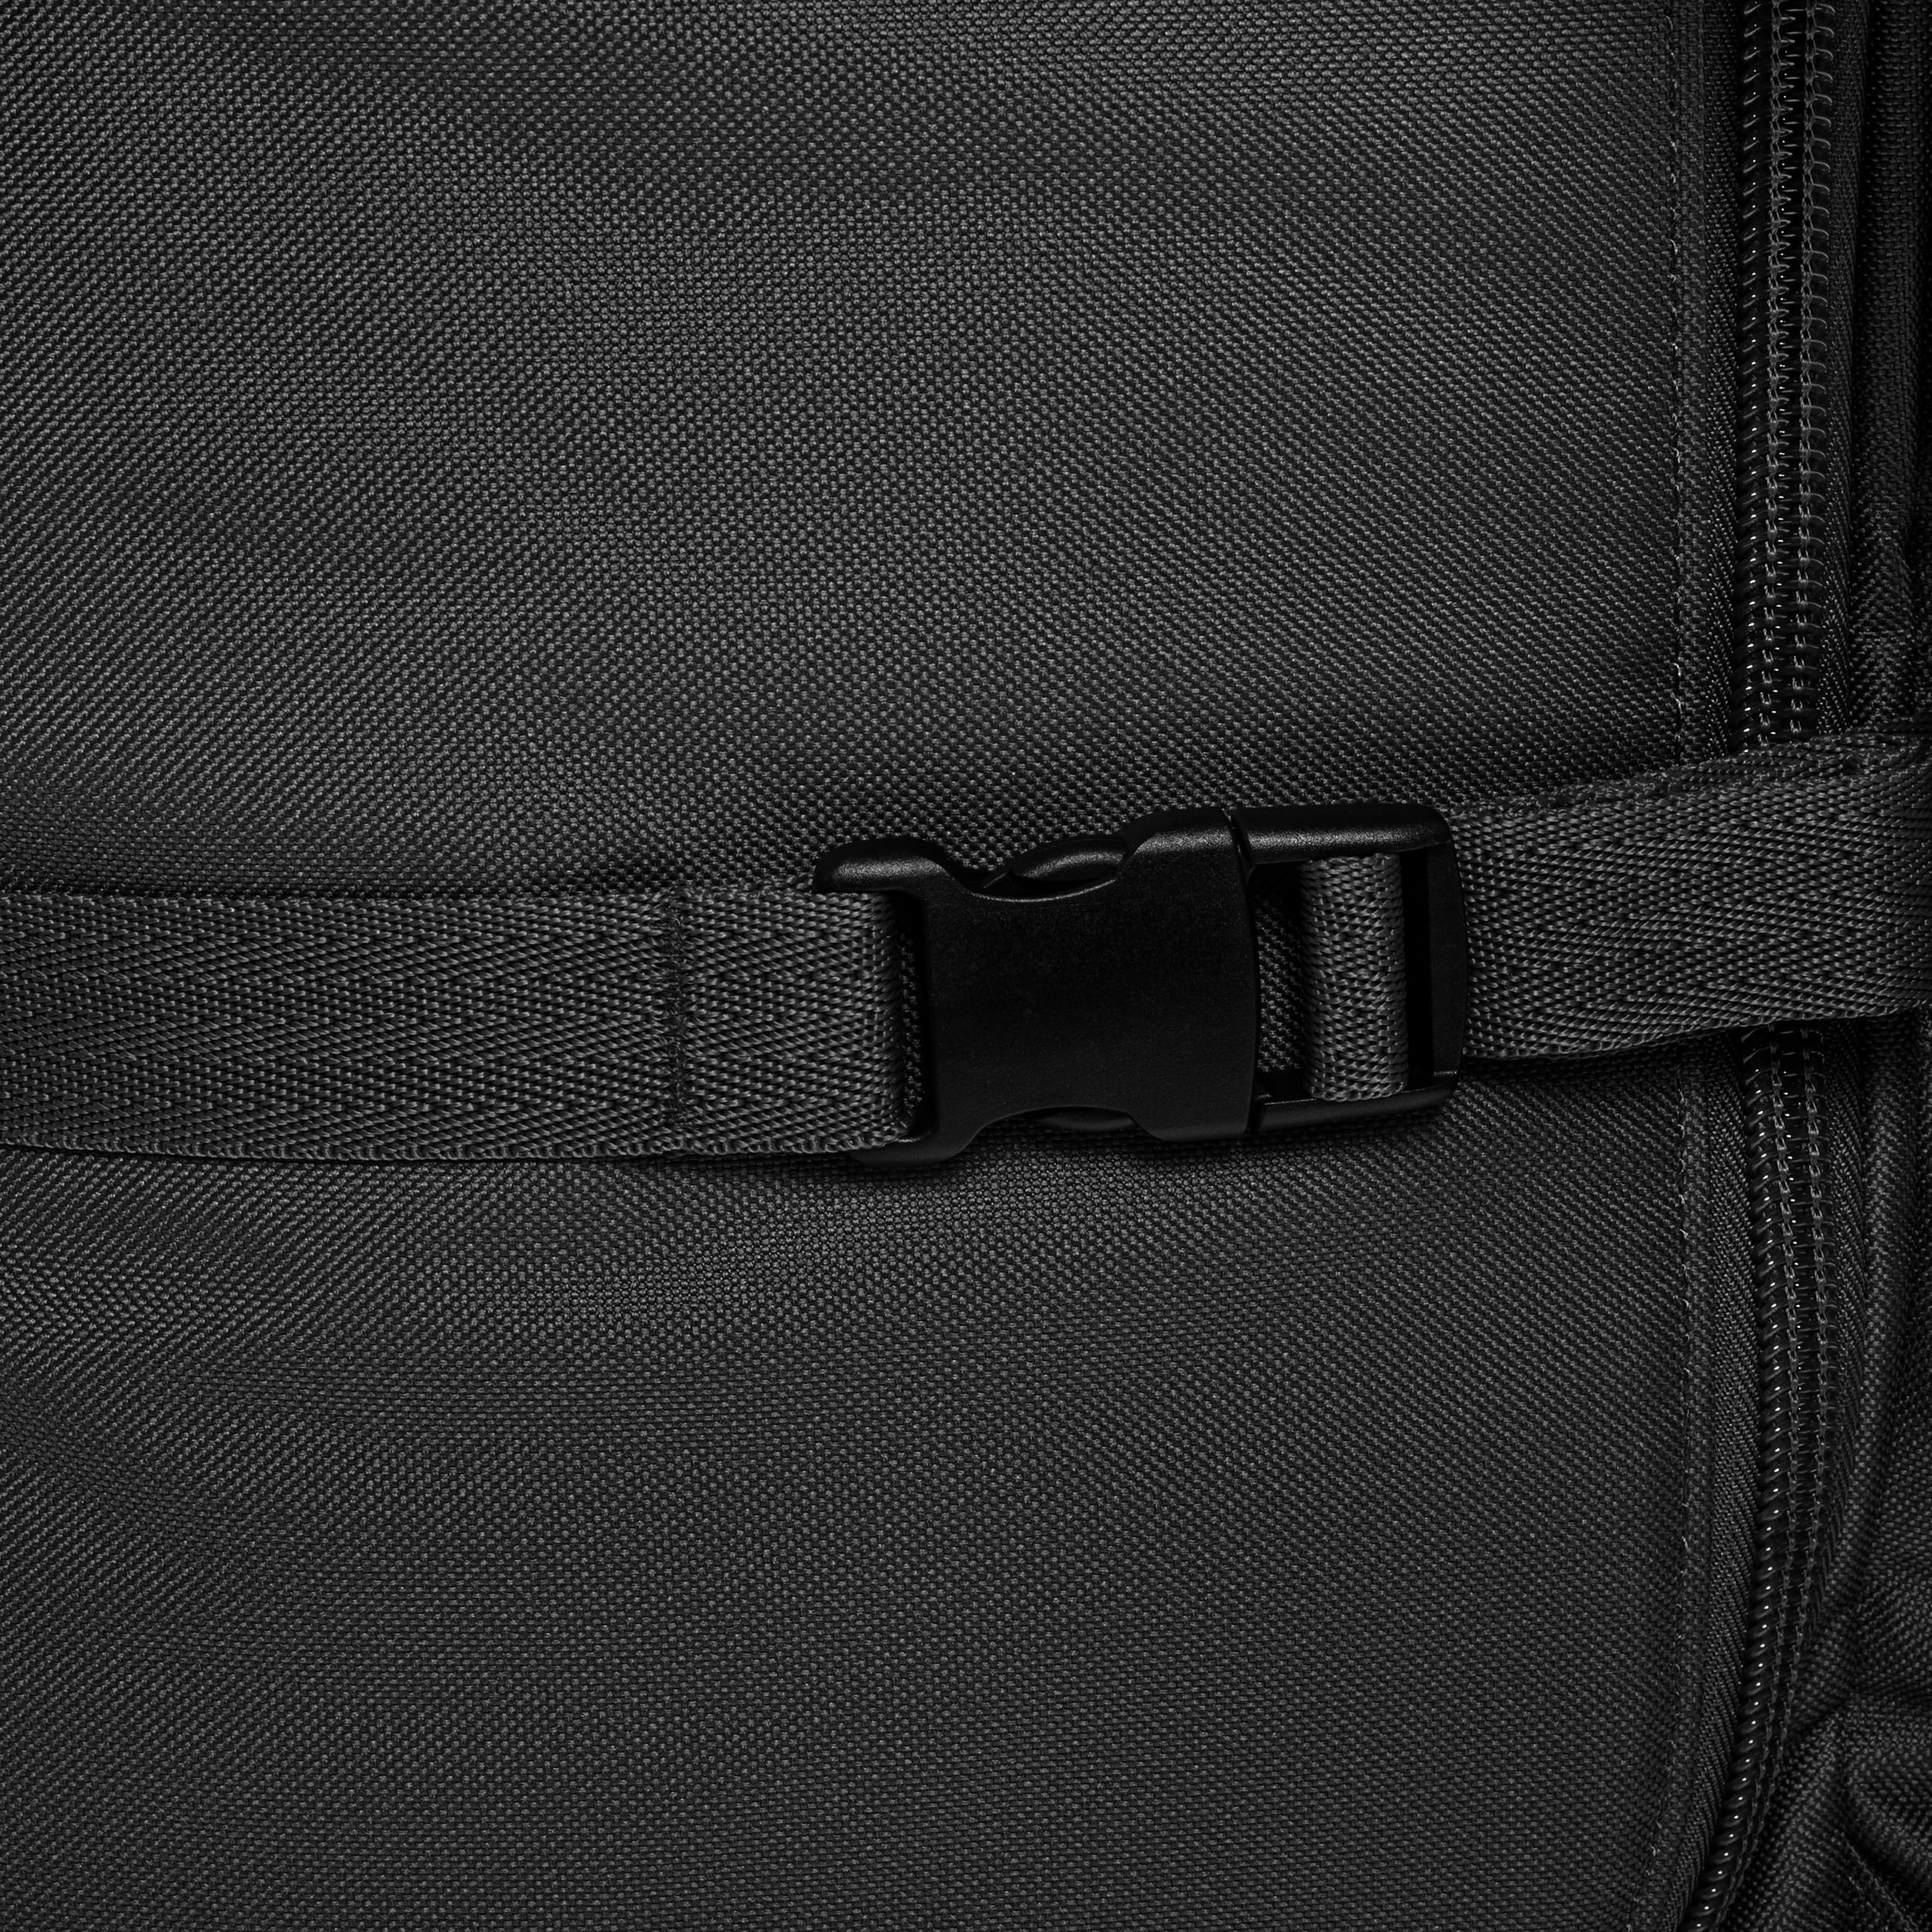 Сумка Mil-Tec Combat Duffle Bag Tap 98 - Чорний